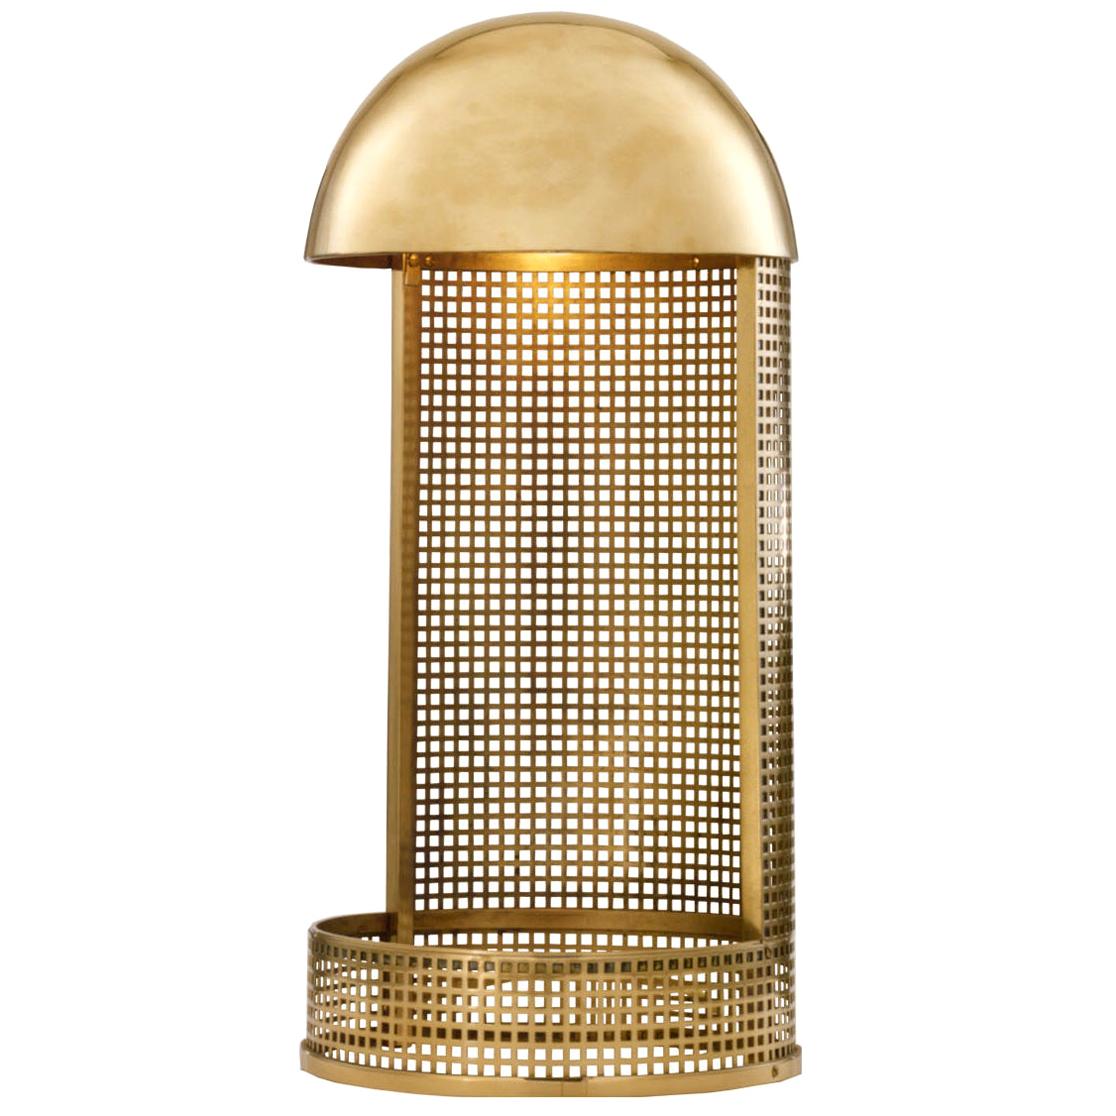 Koloman Moser/Wiener Werkstätte Brass Table Lamp, Re Edition For Sale